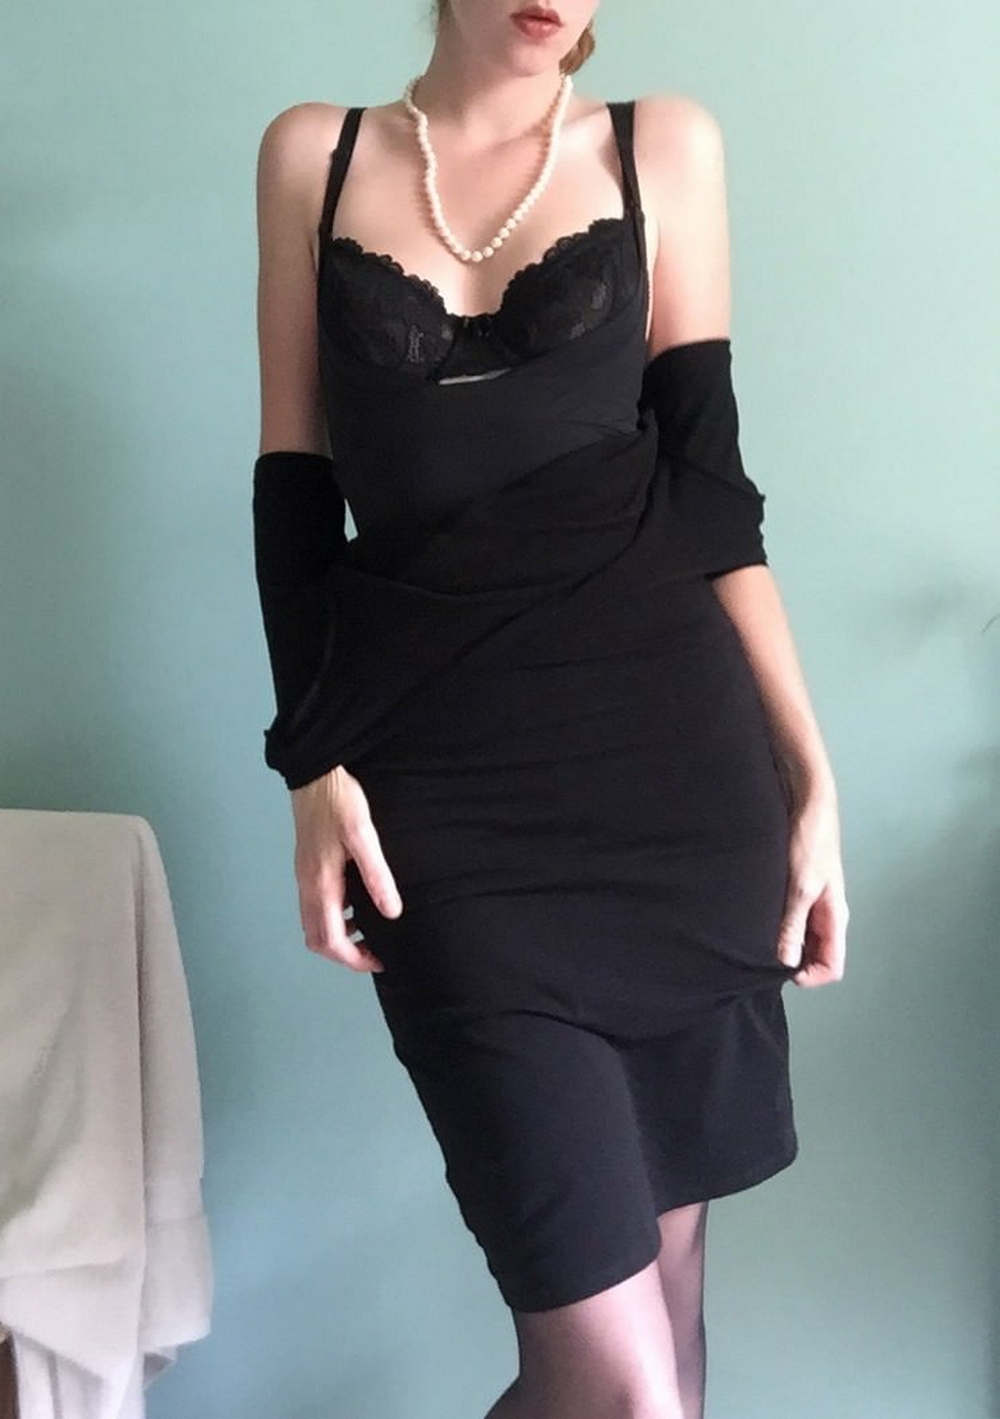 Блондинка в черном платье: порно видео на chelmass.ru